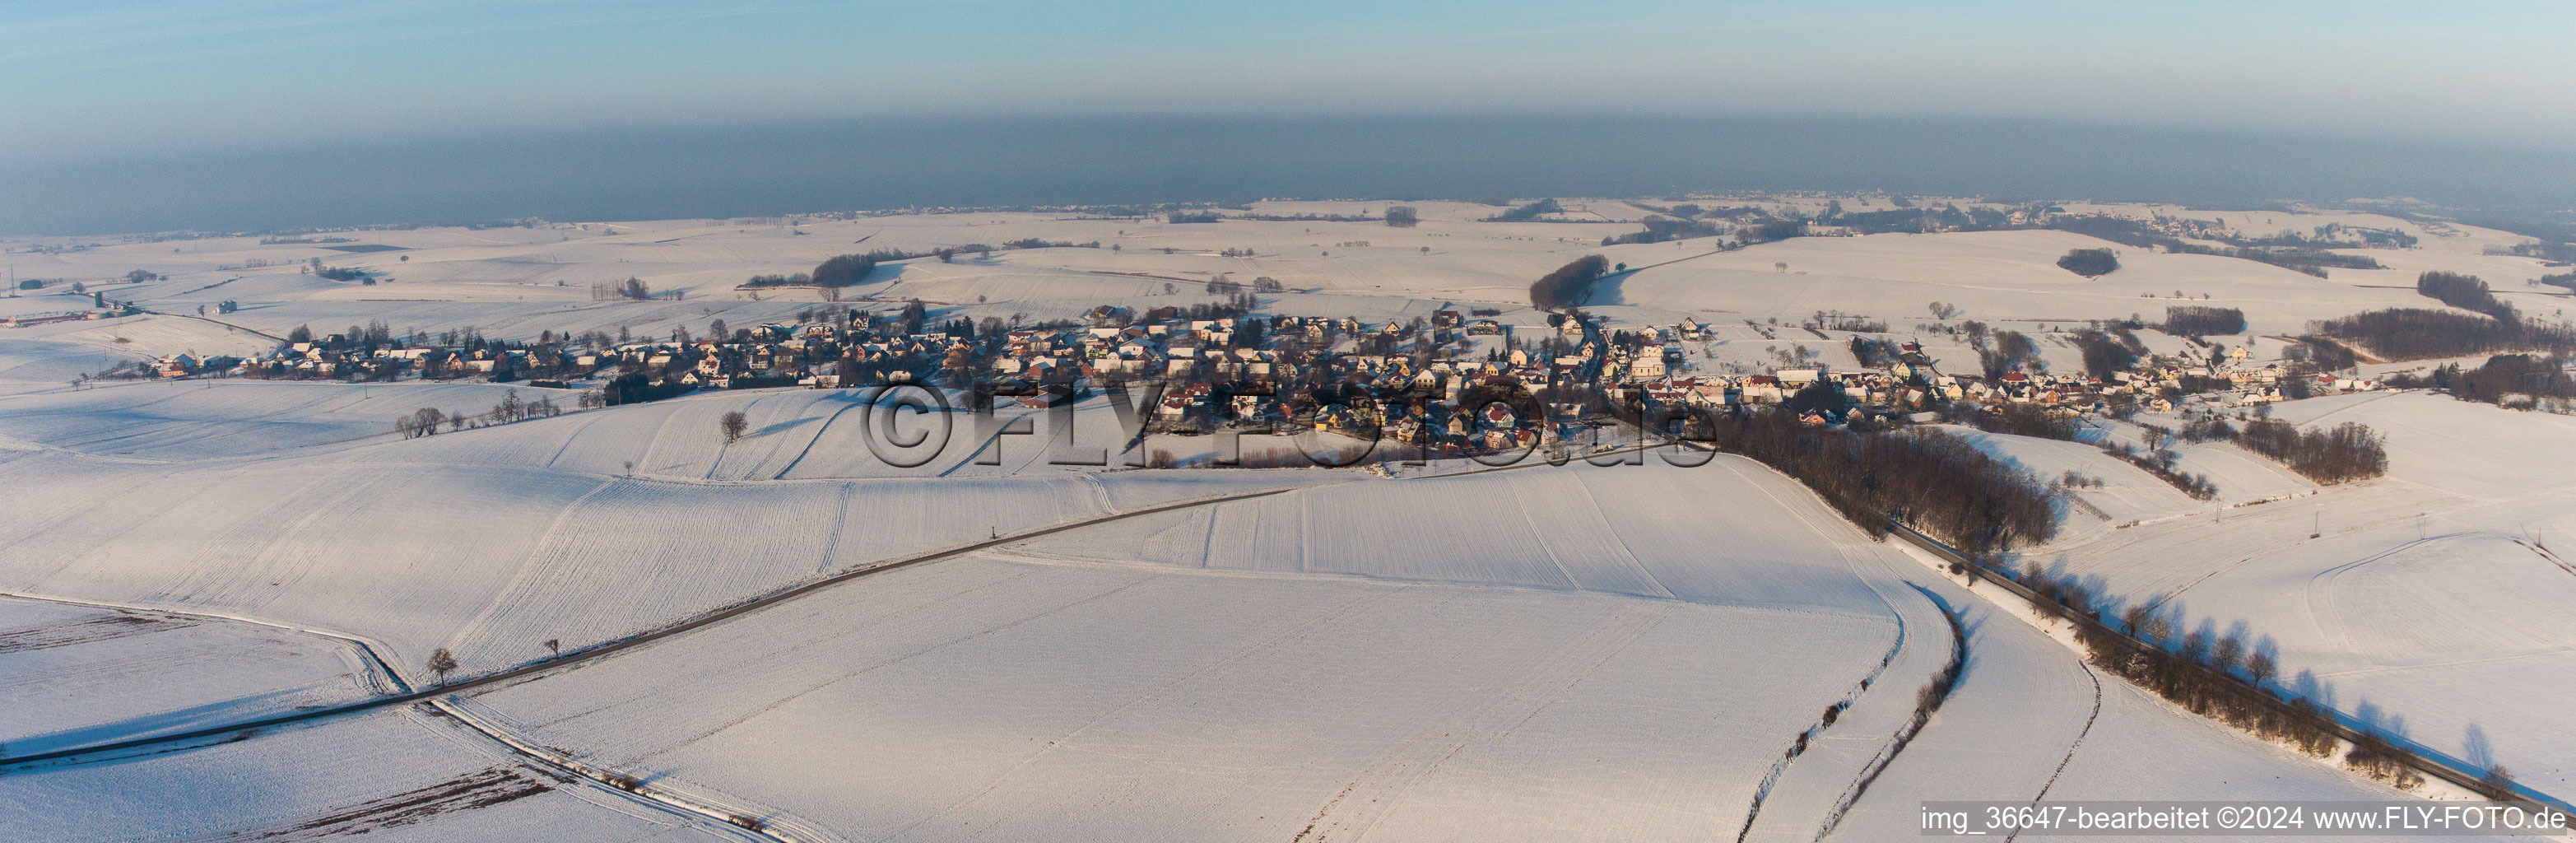 Vue aérienne de Panorama des champs agricoles et des zones agricoles enneigés en hiver à Wintzenbach dans le département Bas Rhin, France